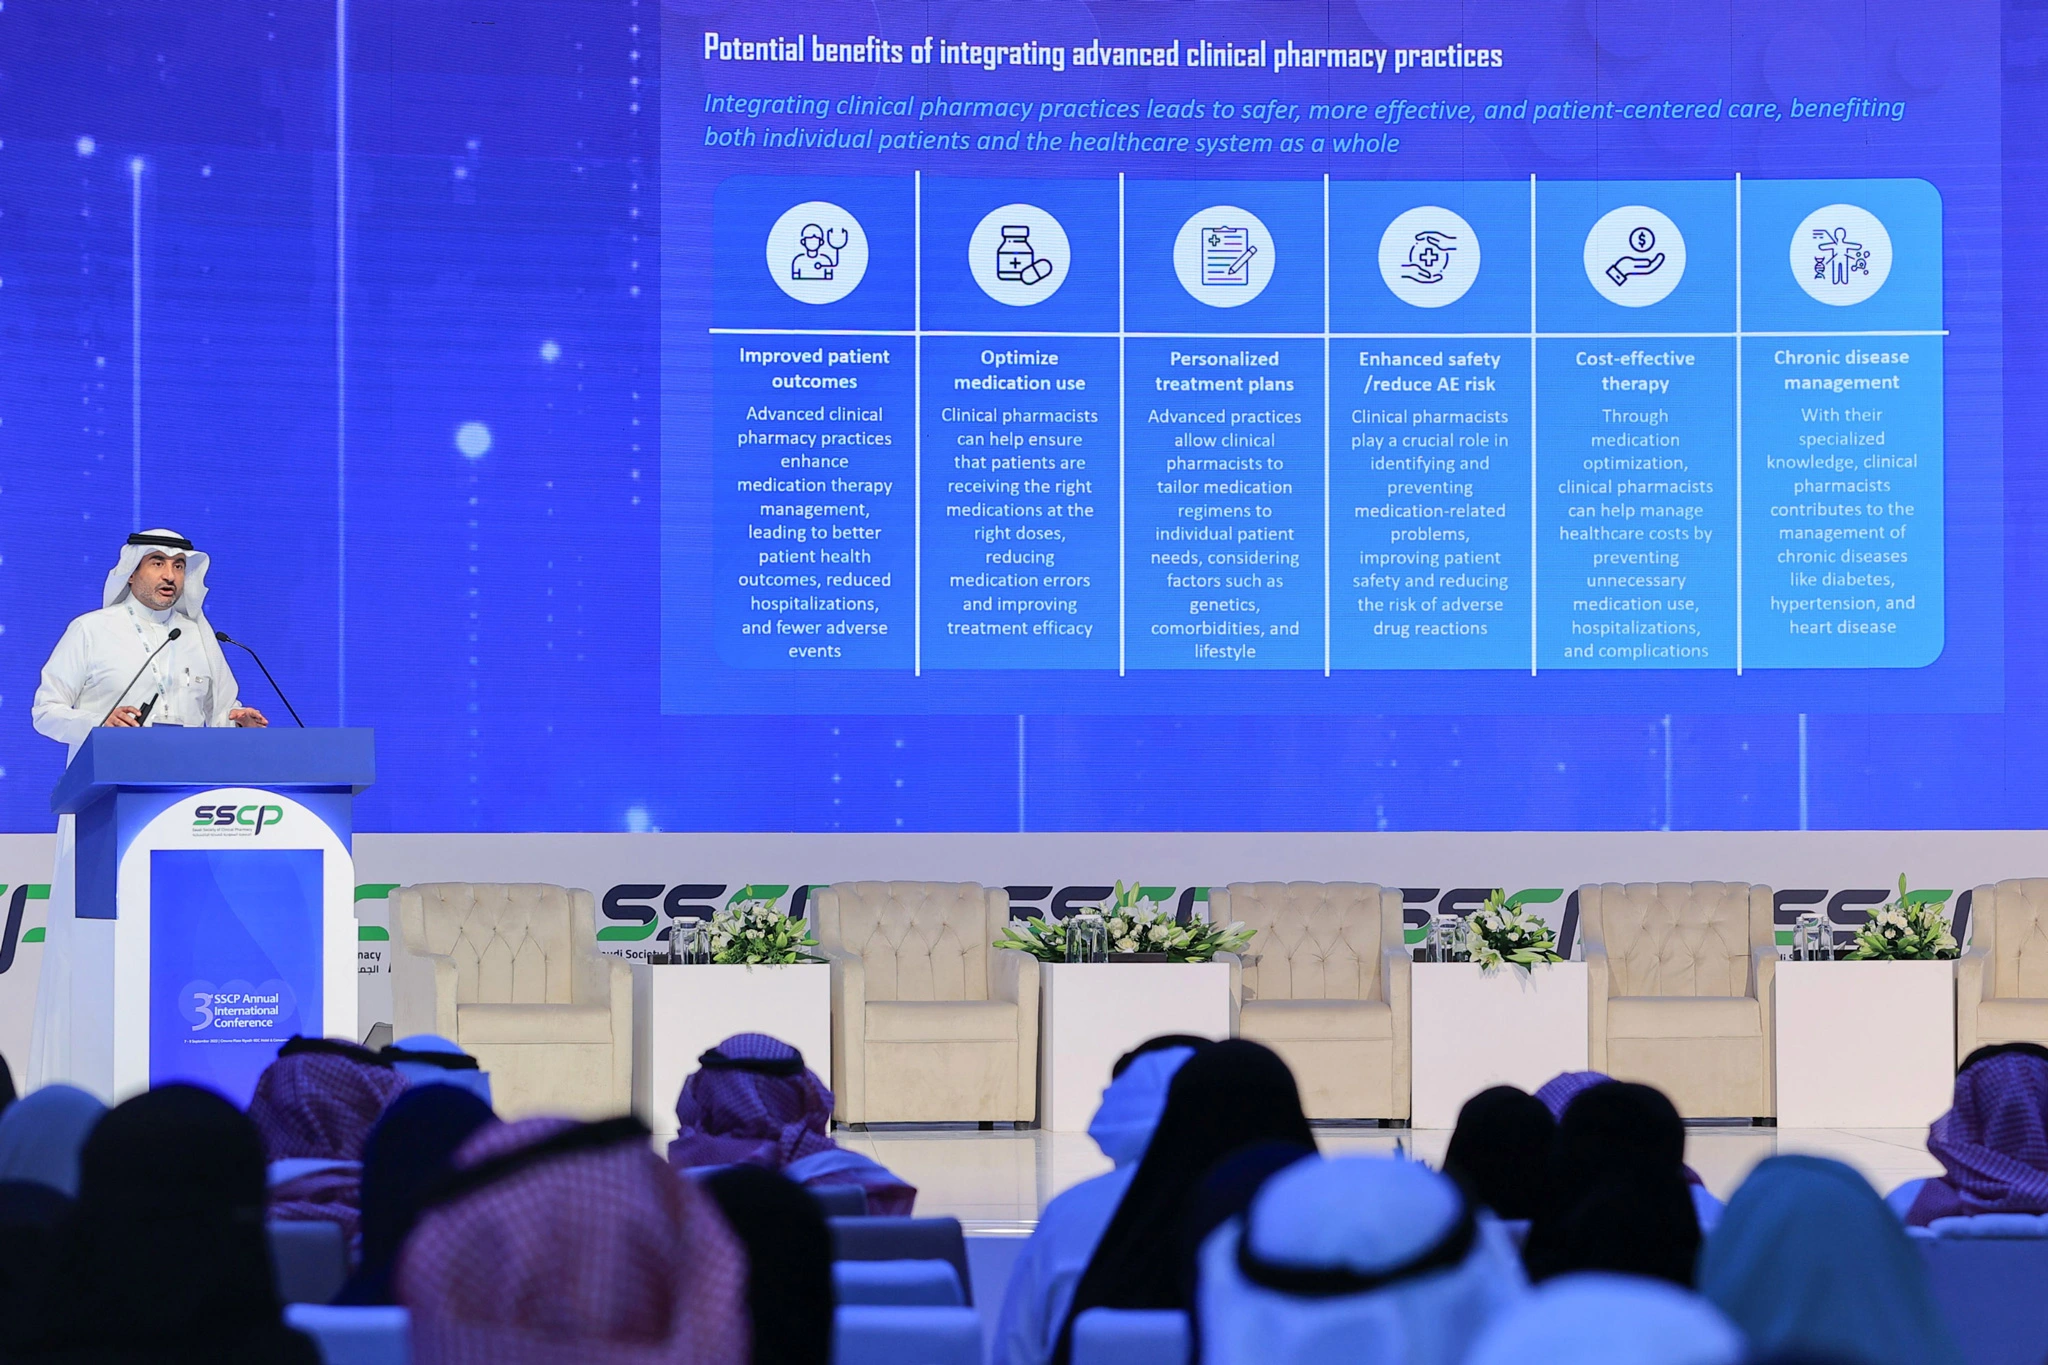 المؤتمر الدولي للجمعية السعودية للصيدلة الإكلينيكية (SSCP 2023)